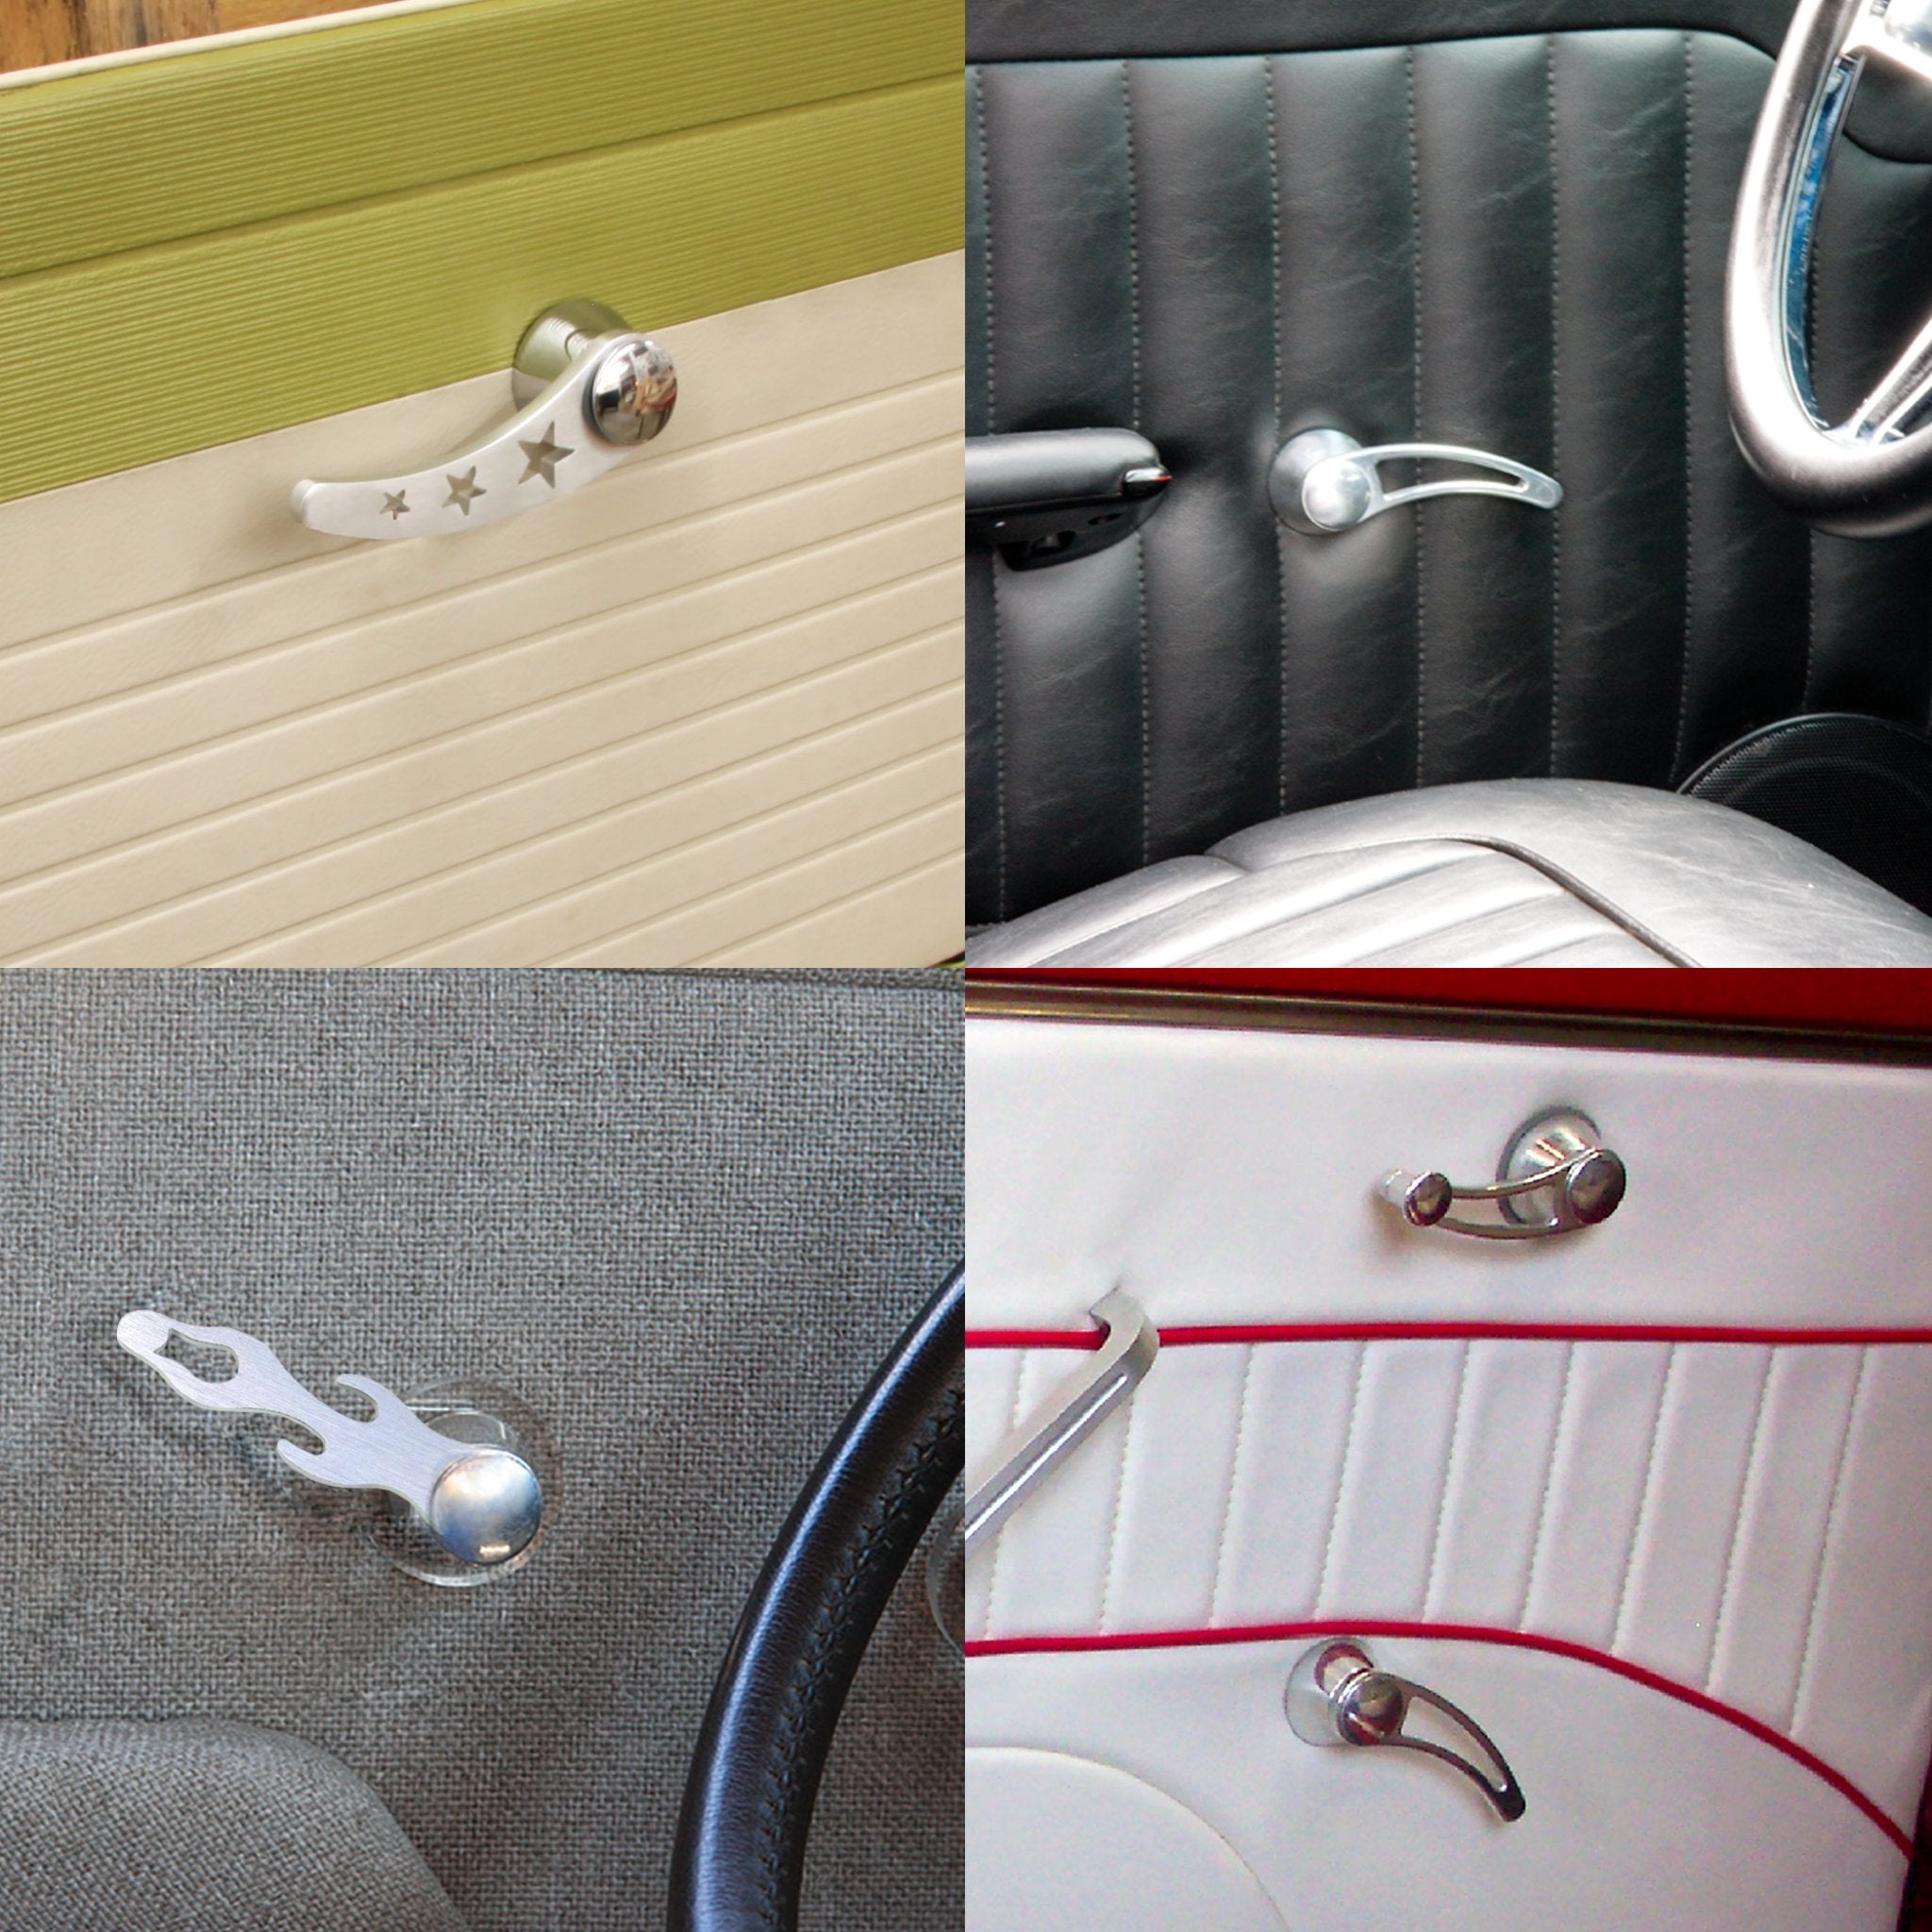 Palancas universales de aluminio para manija de puerta interior de automóvil (par) - Diseño de llama